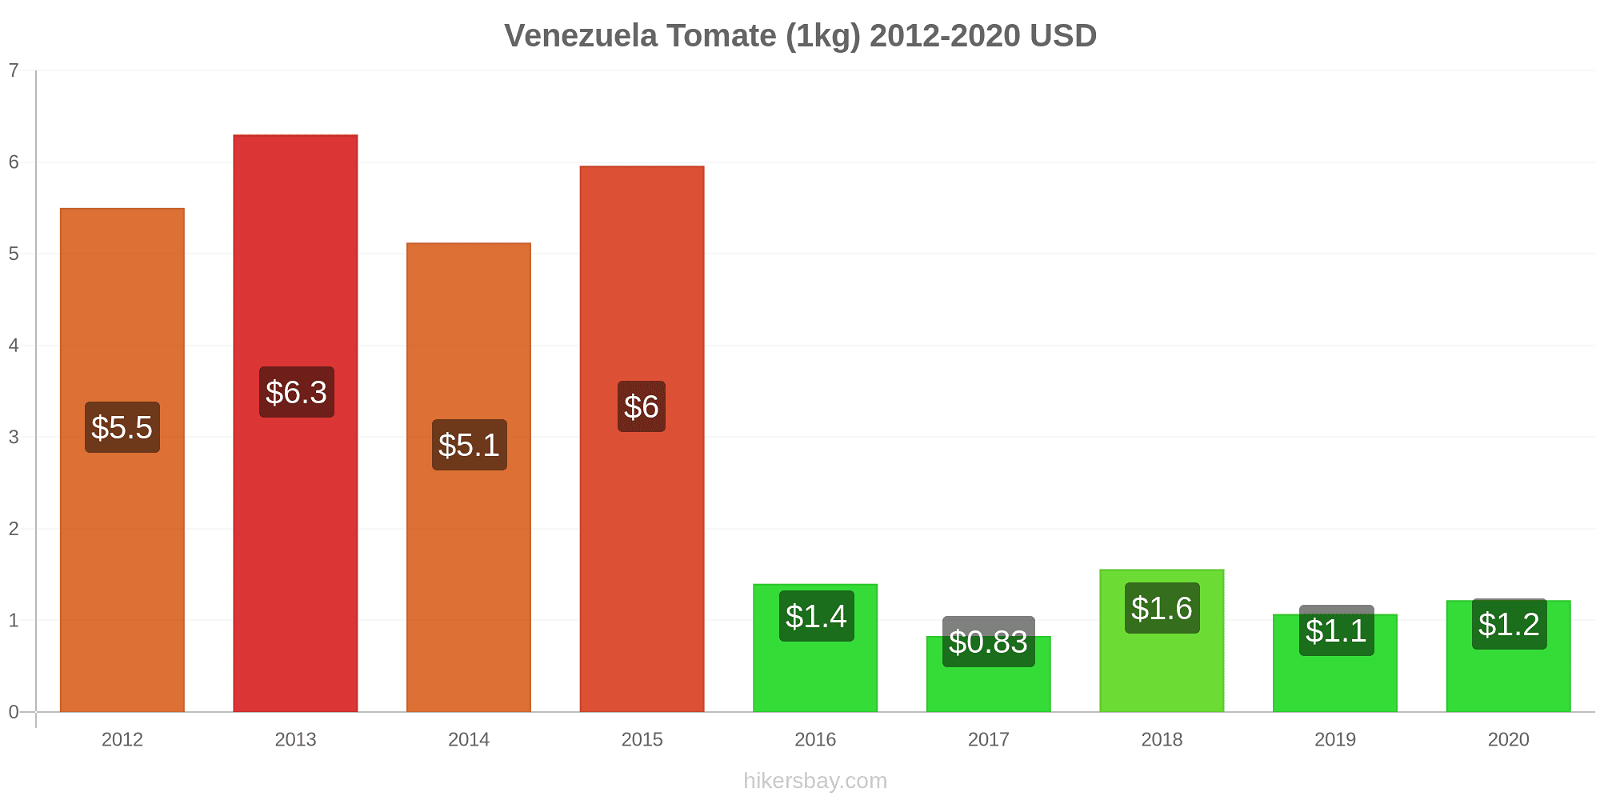 Venezuela cambios de precios Tomate (1kg) hikersbay.com